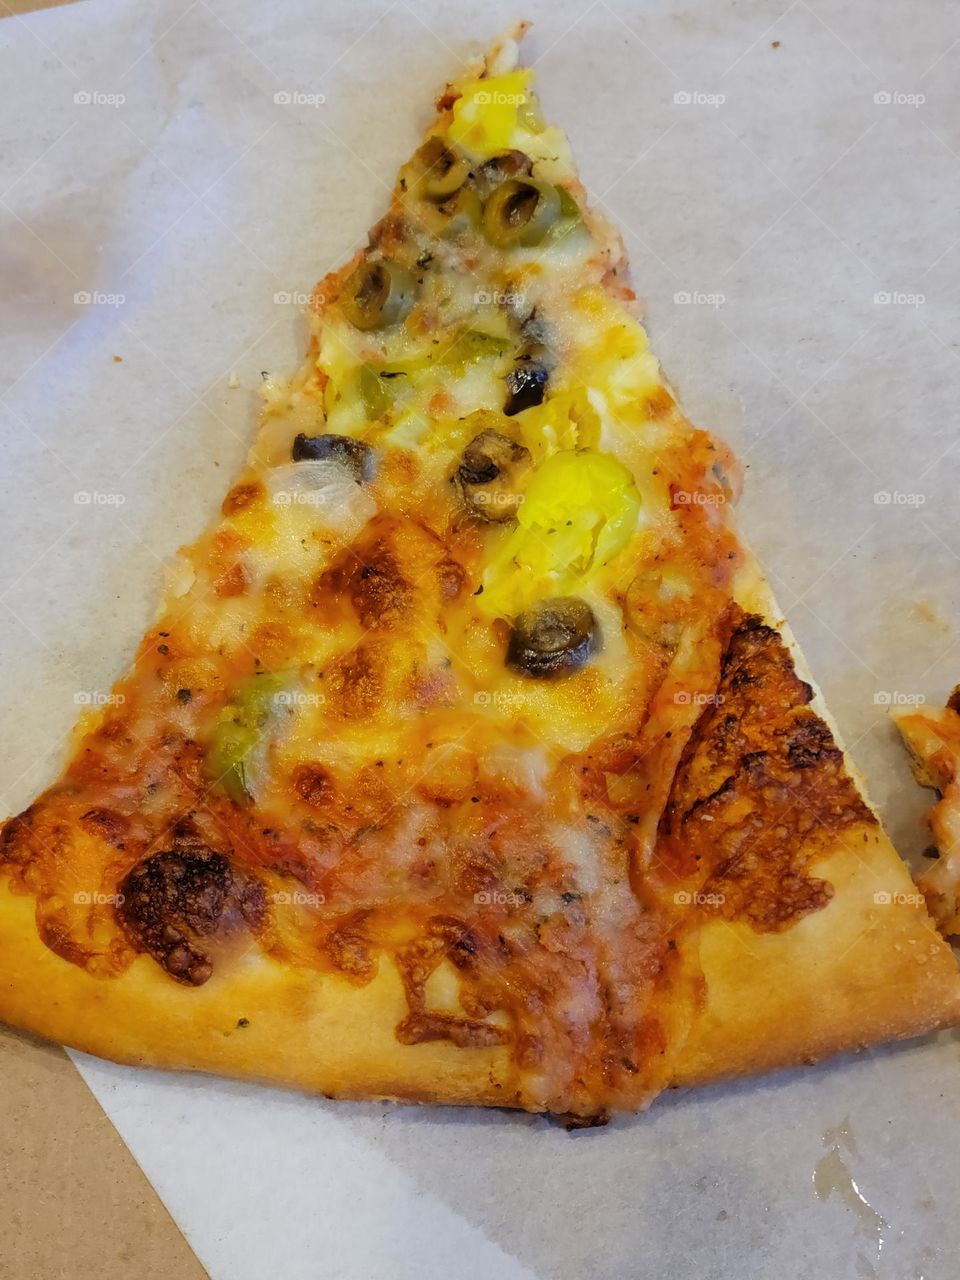 Delicious slice of pizza